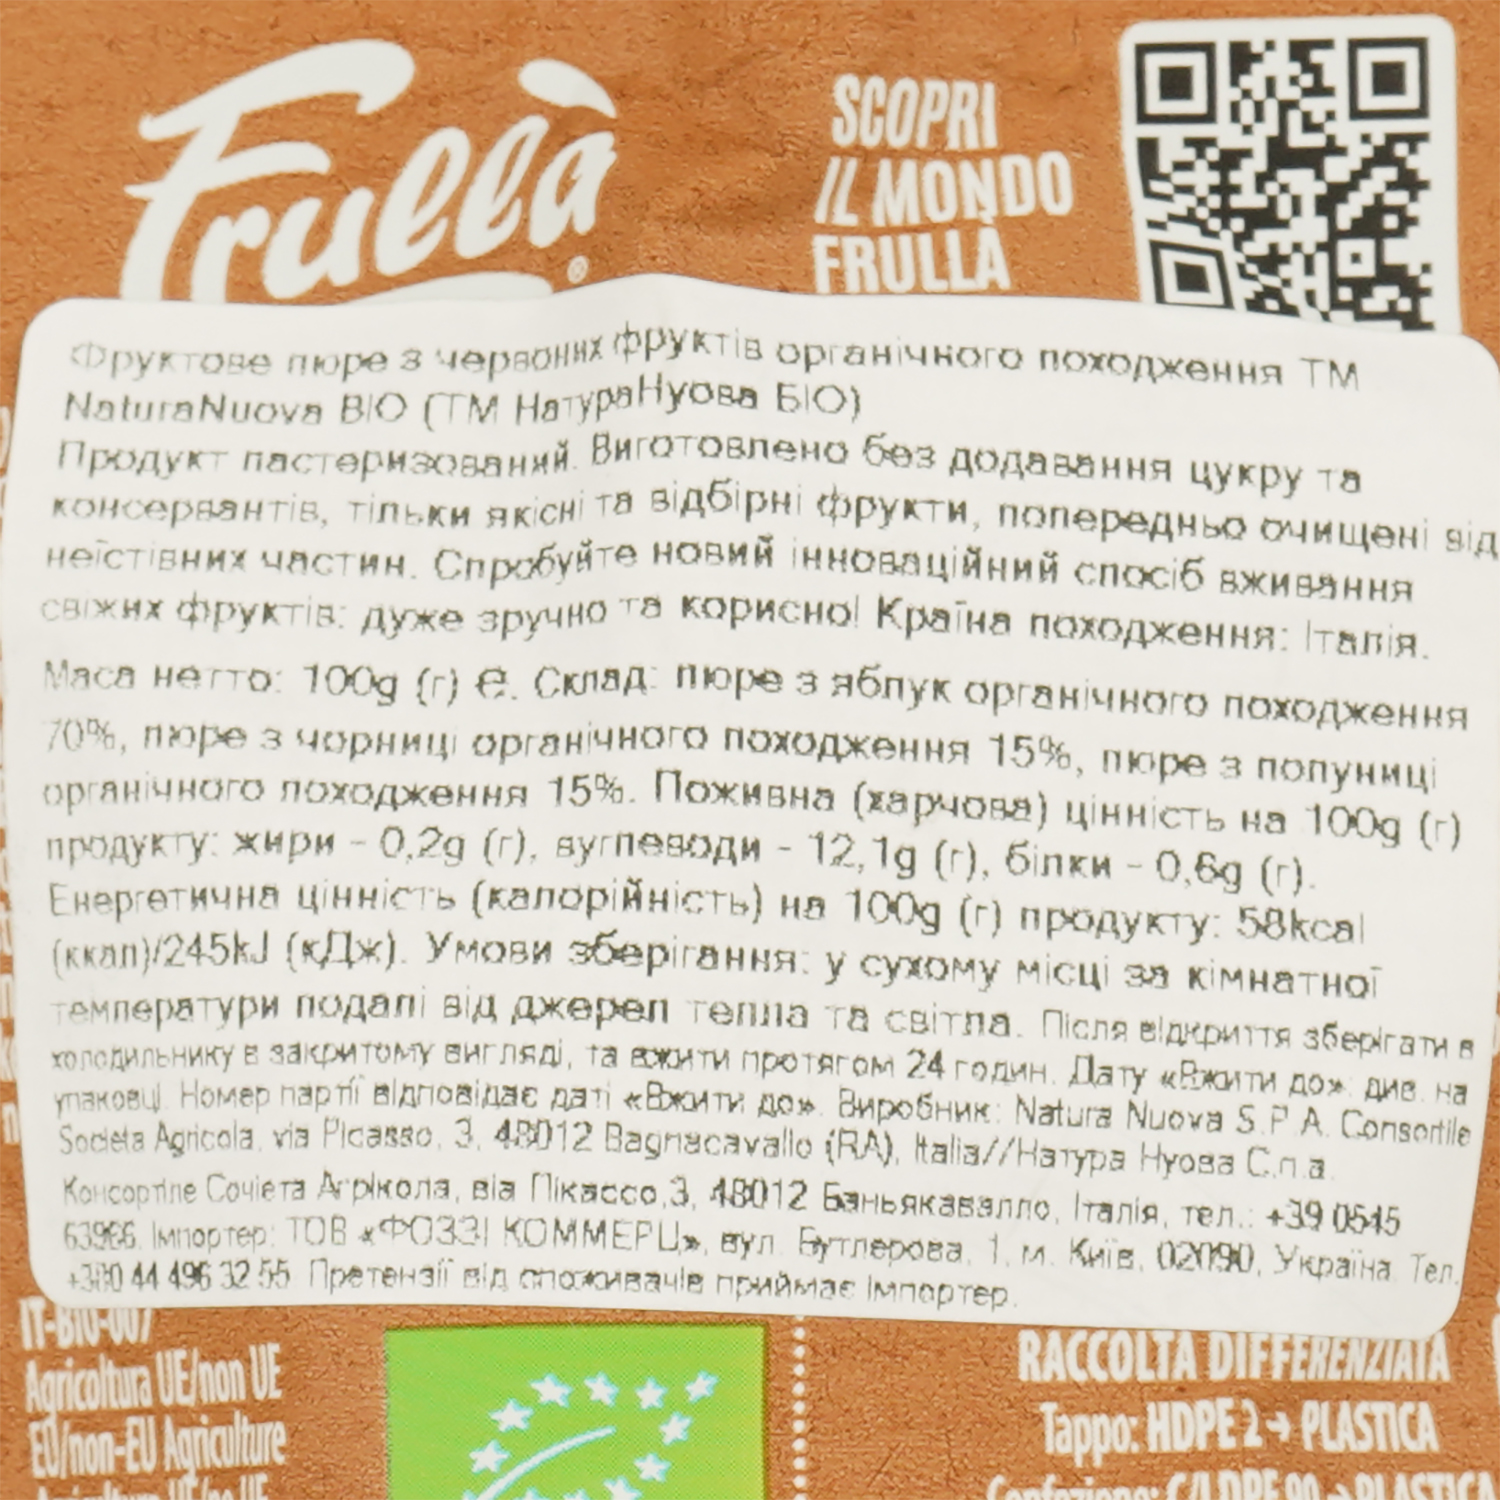 Пюре фруктовое Frulla Bio Mela Frutti Rossi из красных фруктов, 100 г (583585) - фото 3